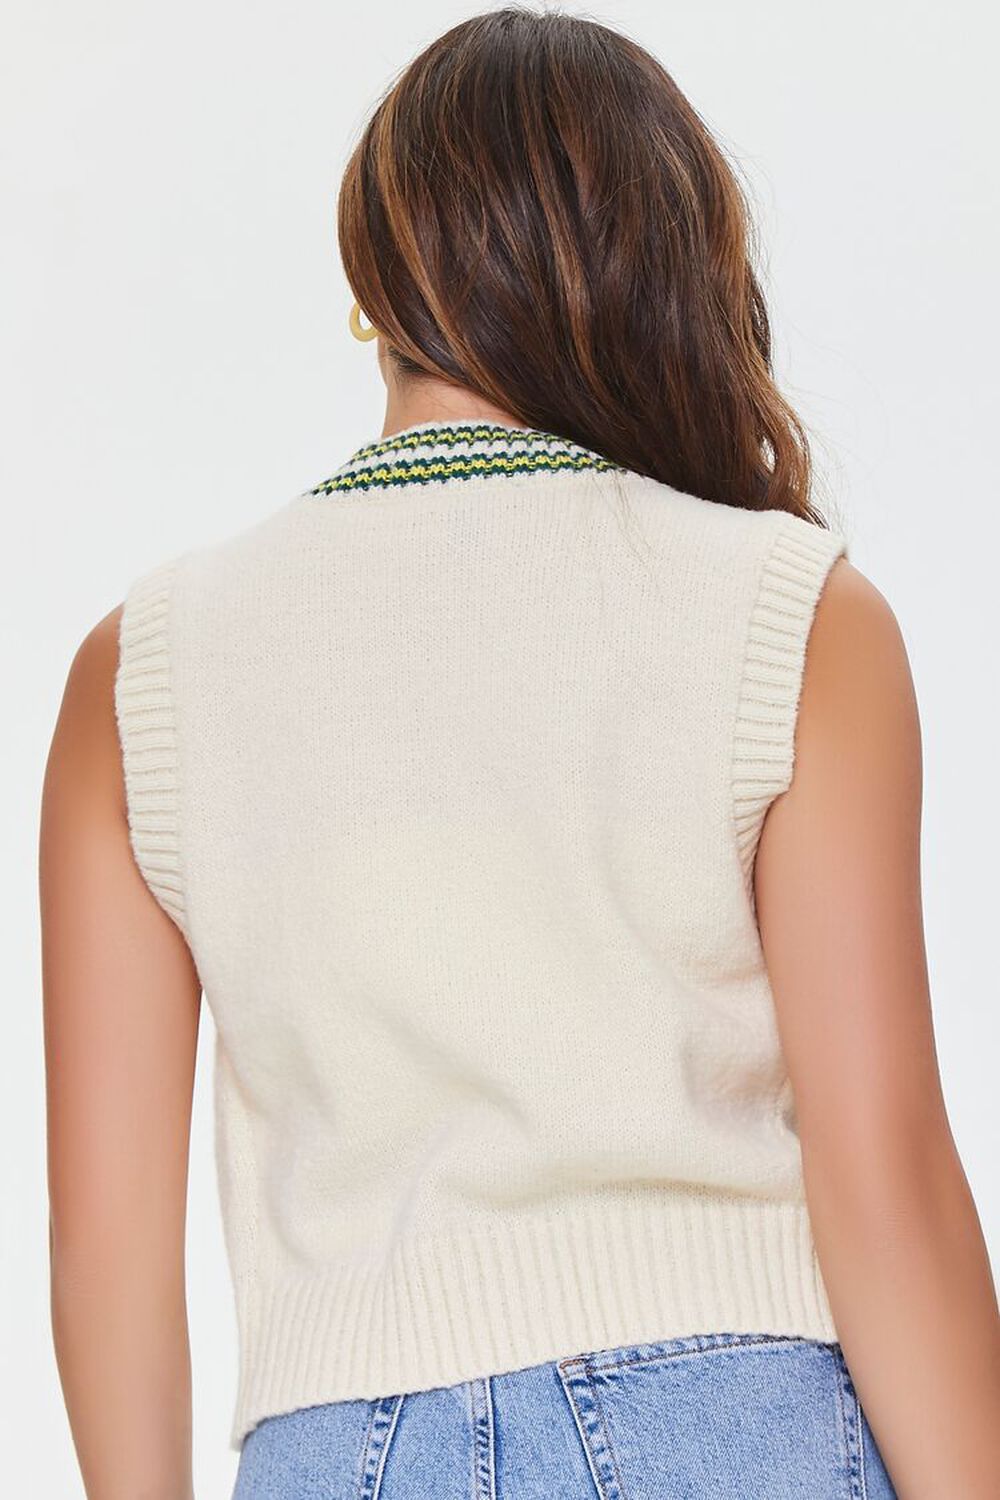 CREAM/GREEN Striped Sweater Vest, image 3